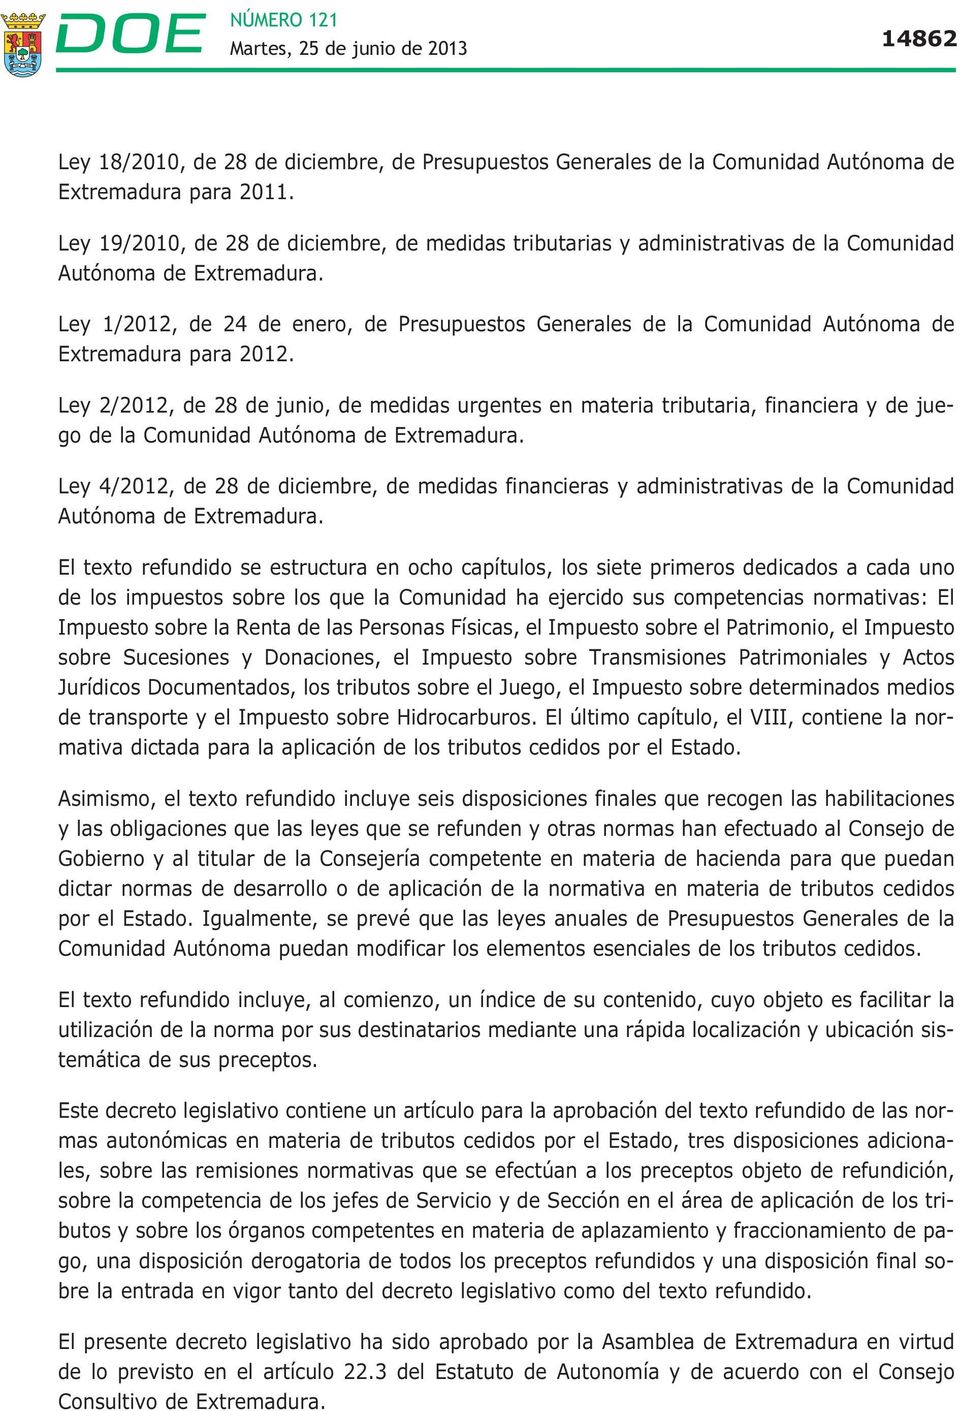 Ley 1/2012, de 24 de enero, de Presupuestos Generales de la Comunidad Autónoma de Extremadura para 2012.